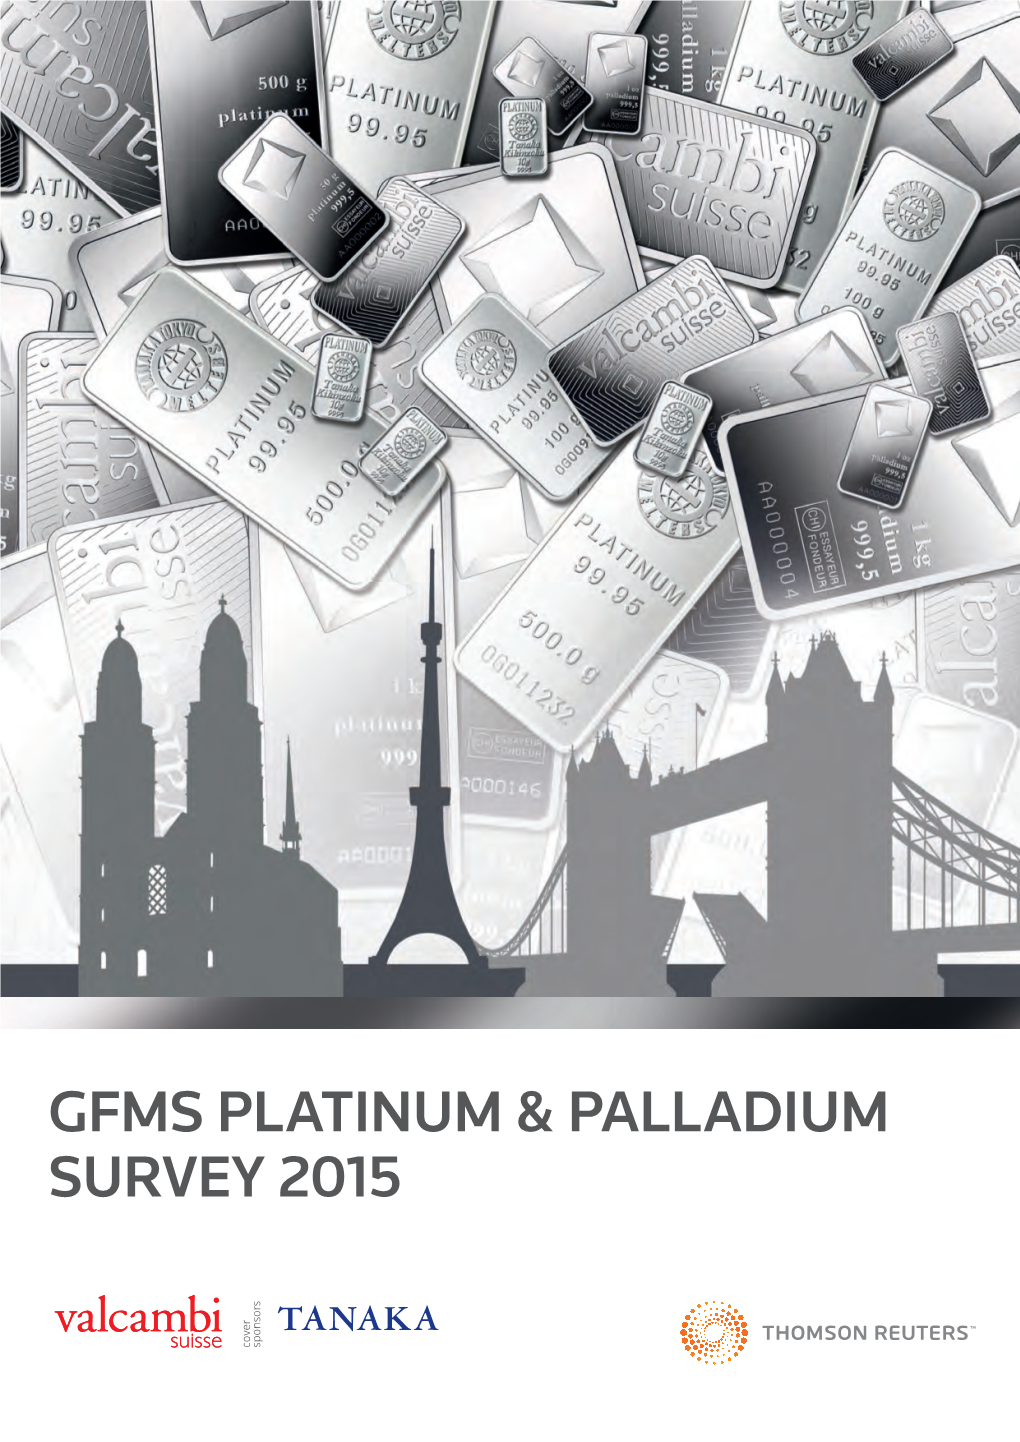 Gfms Platinum & Palladium Survey 2015